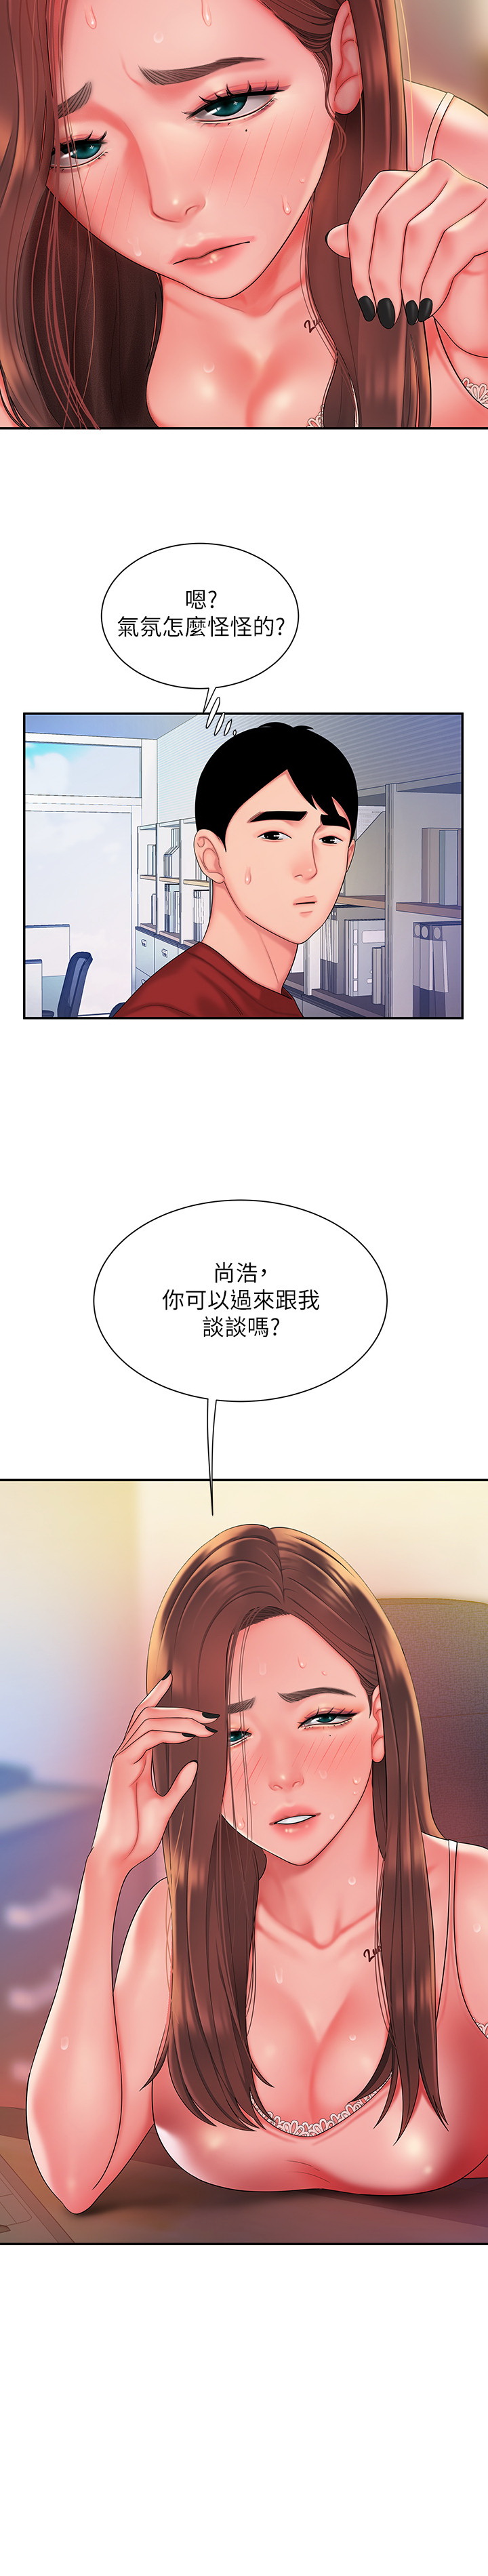 韩国污漫画 幸福外送員 第39话 24